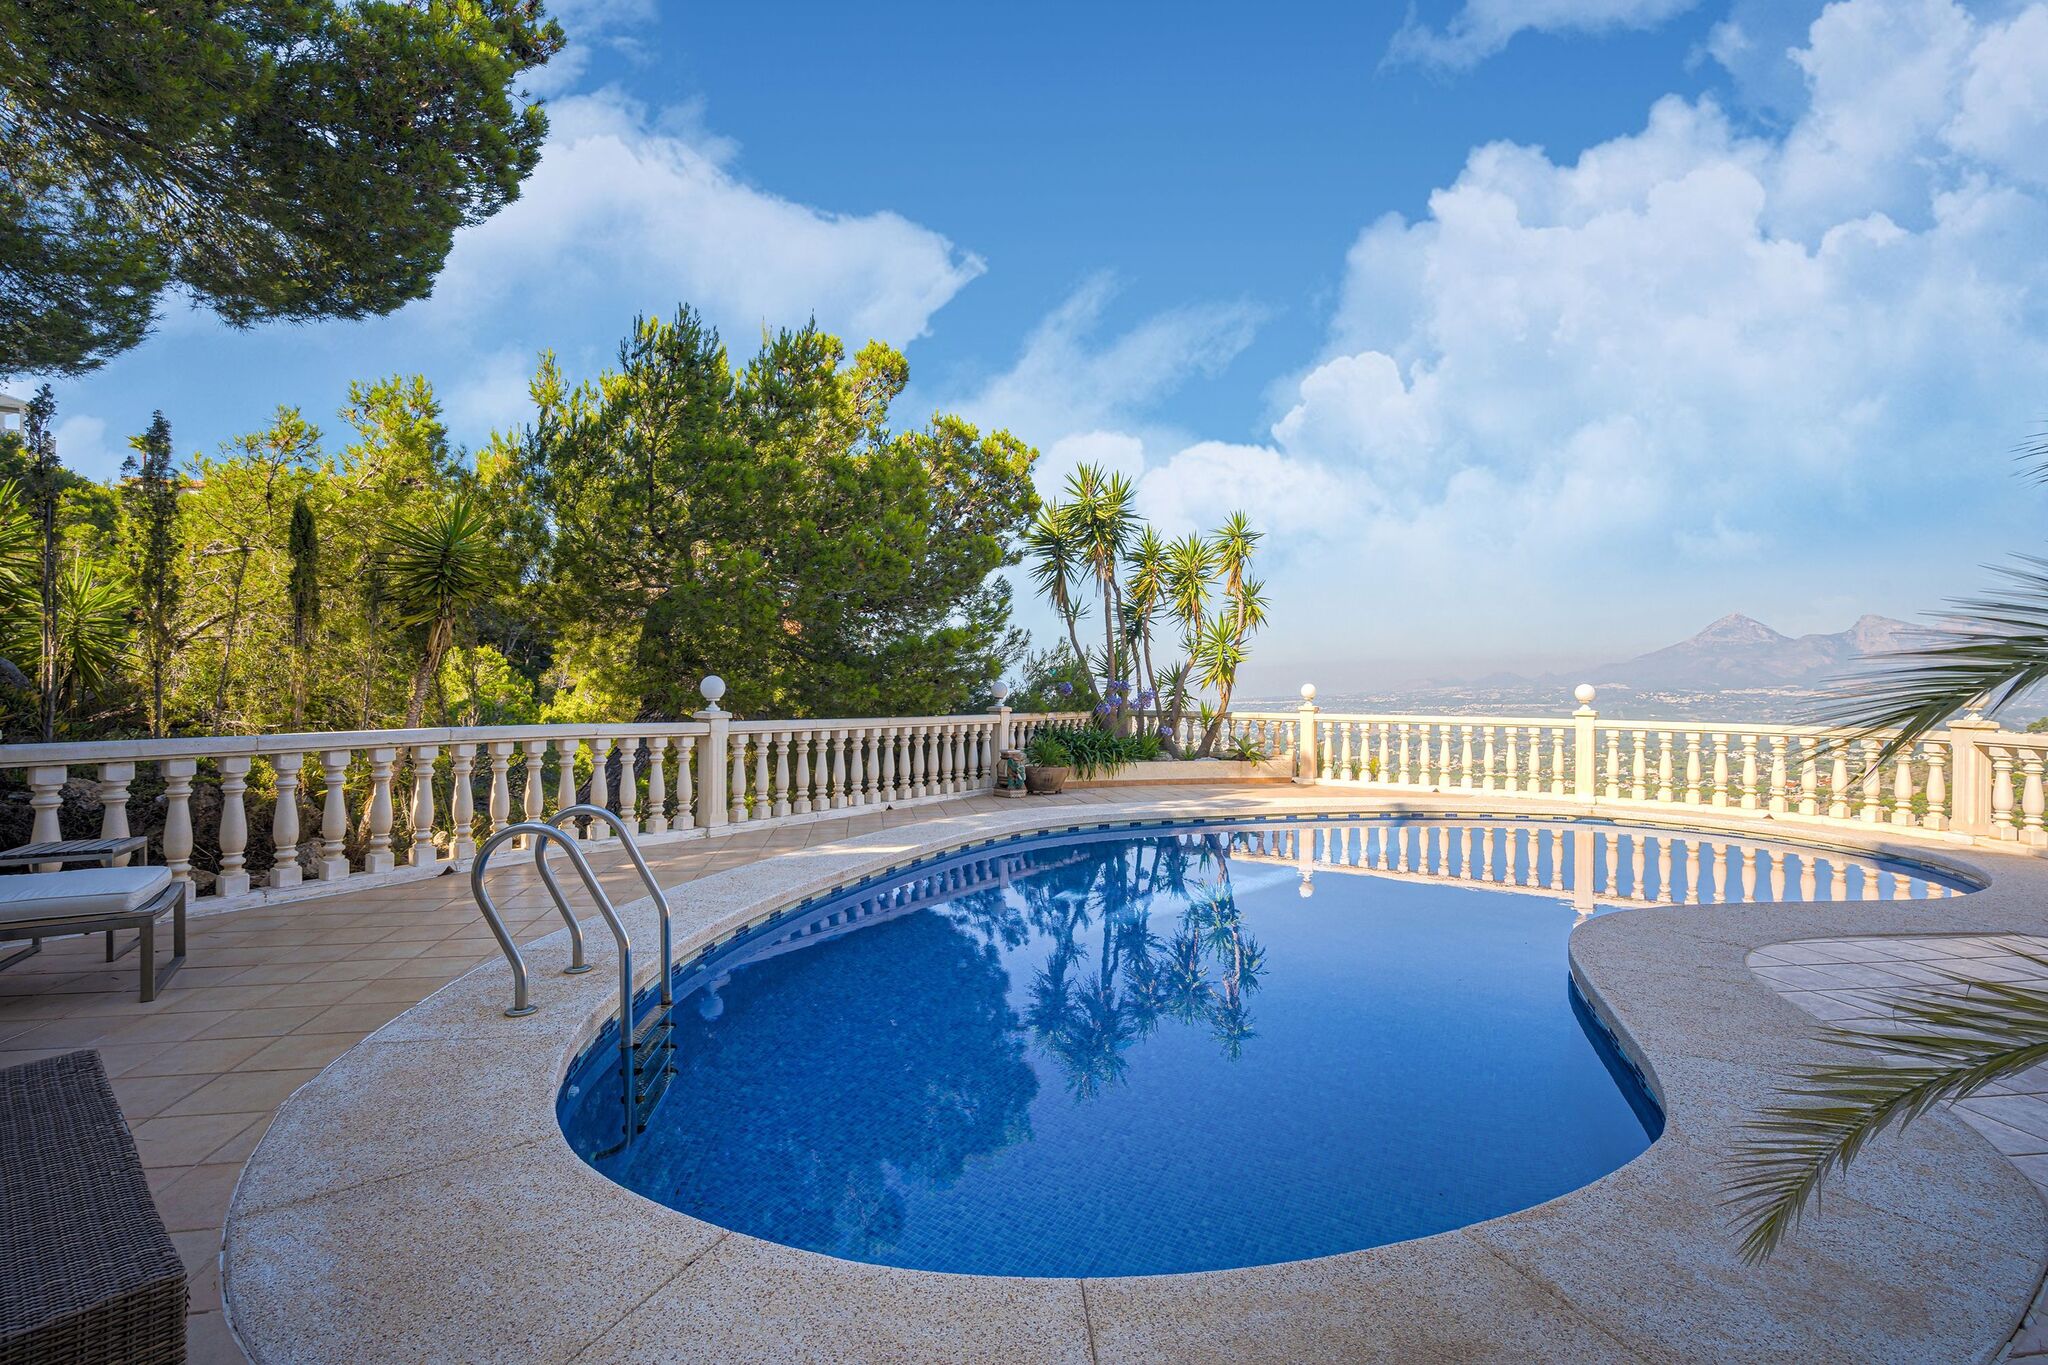 Villa de luxe avec piscine privée près de la mer à Altea